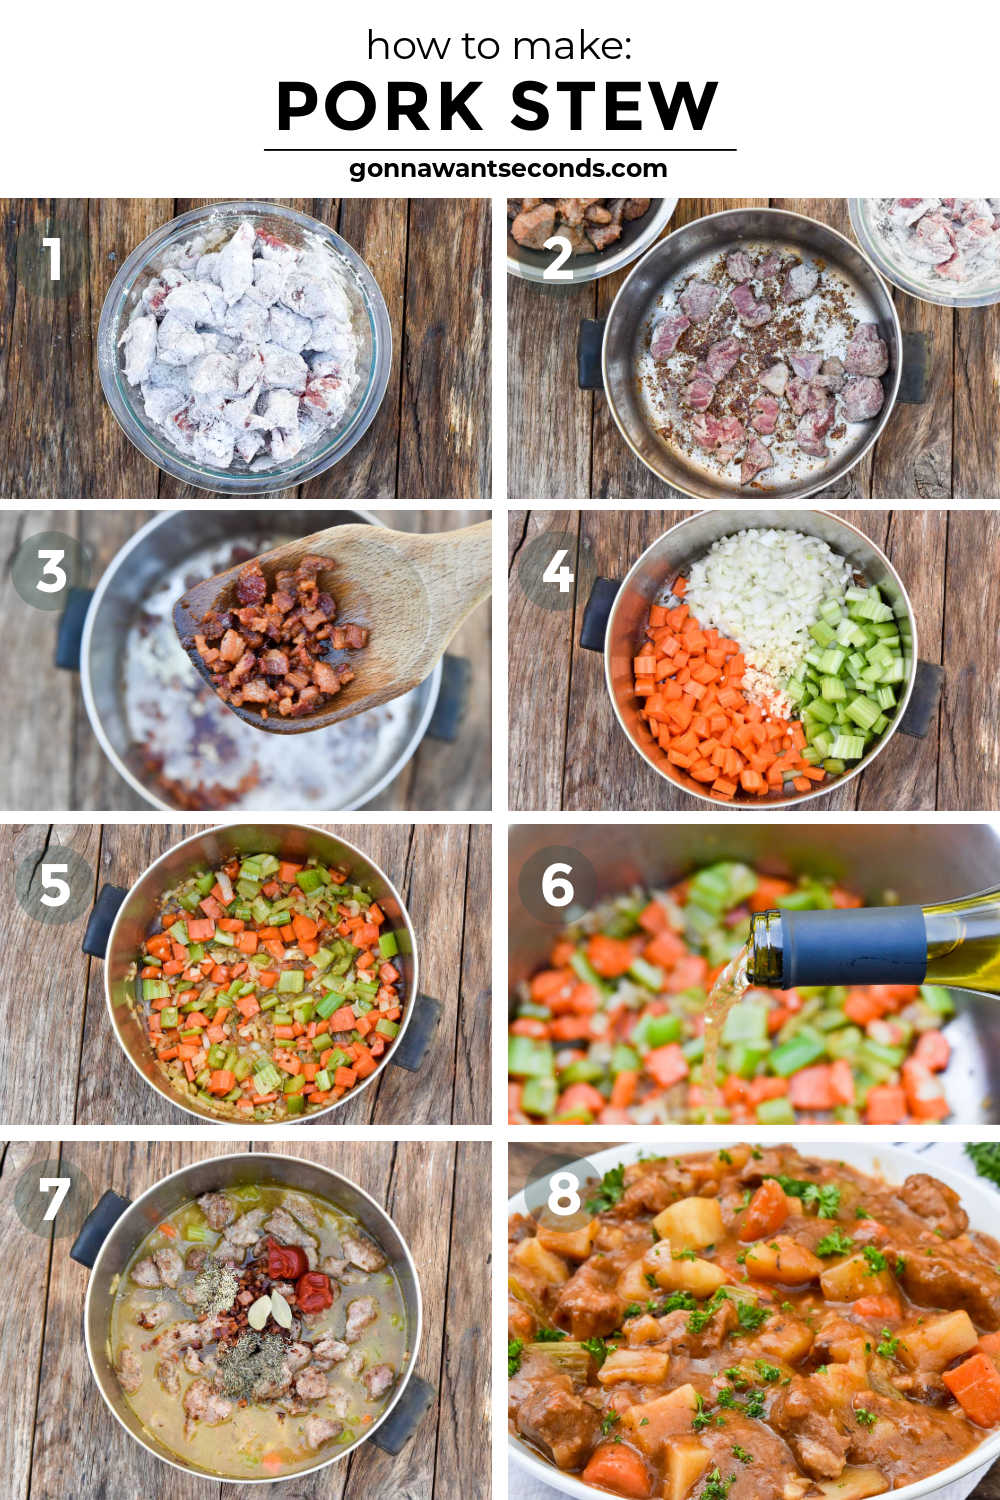 Step by step how to make pork stew